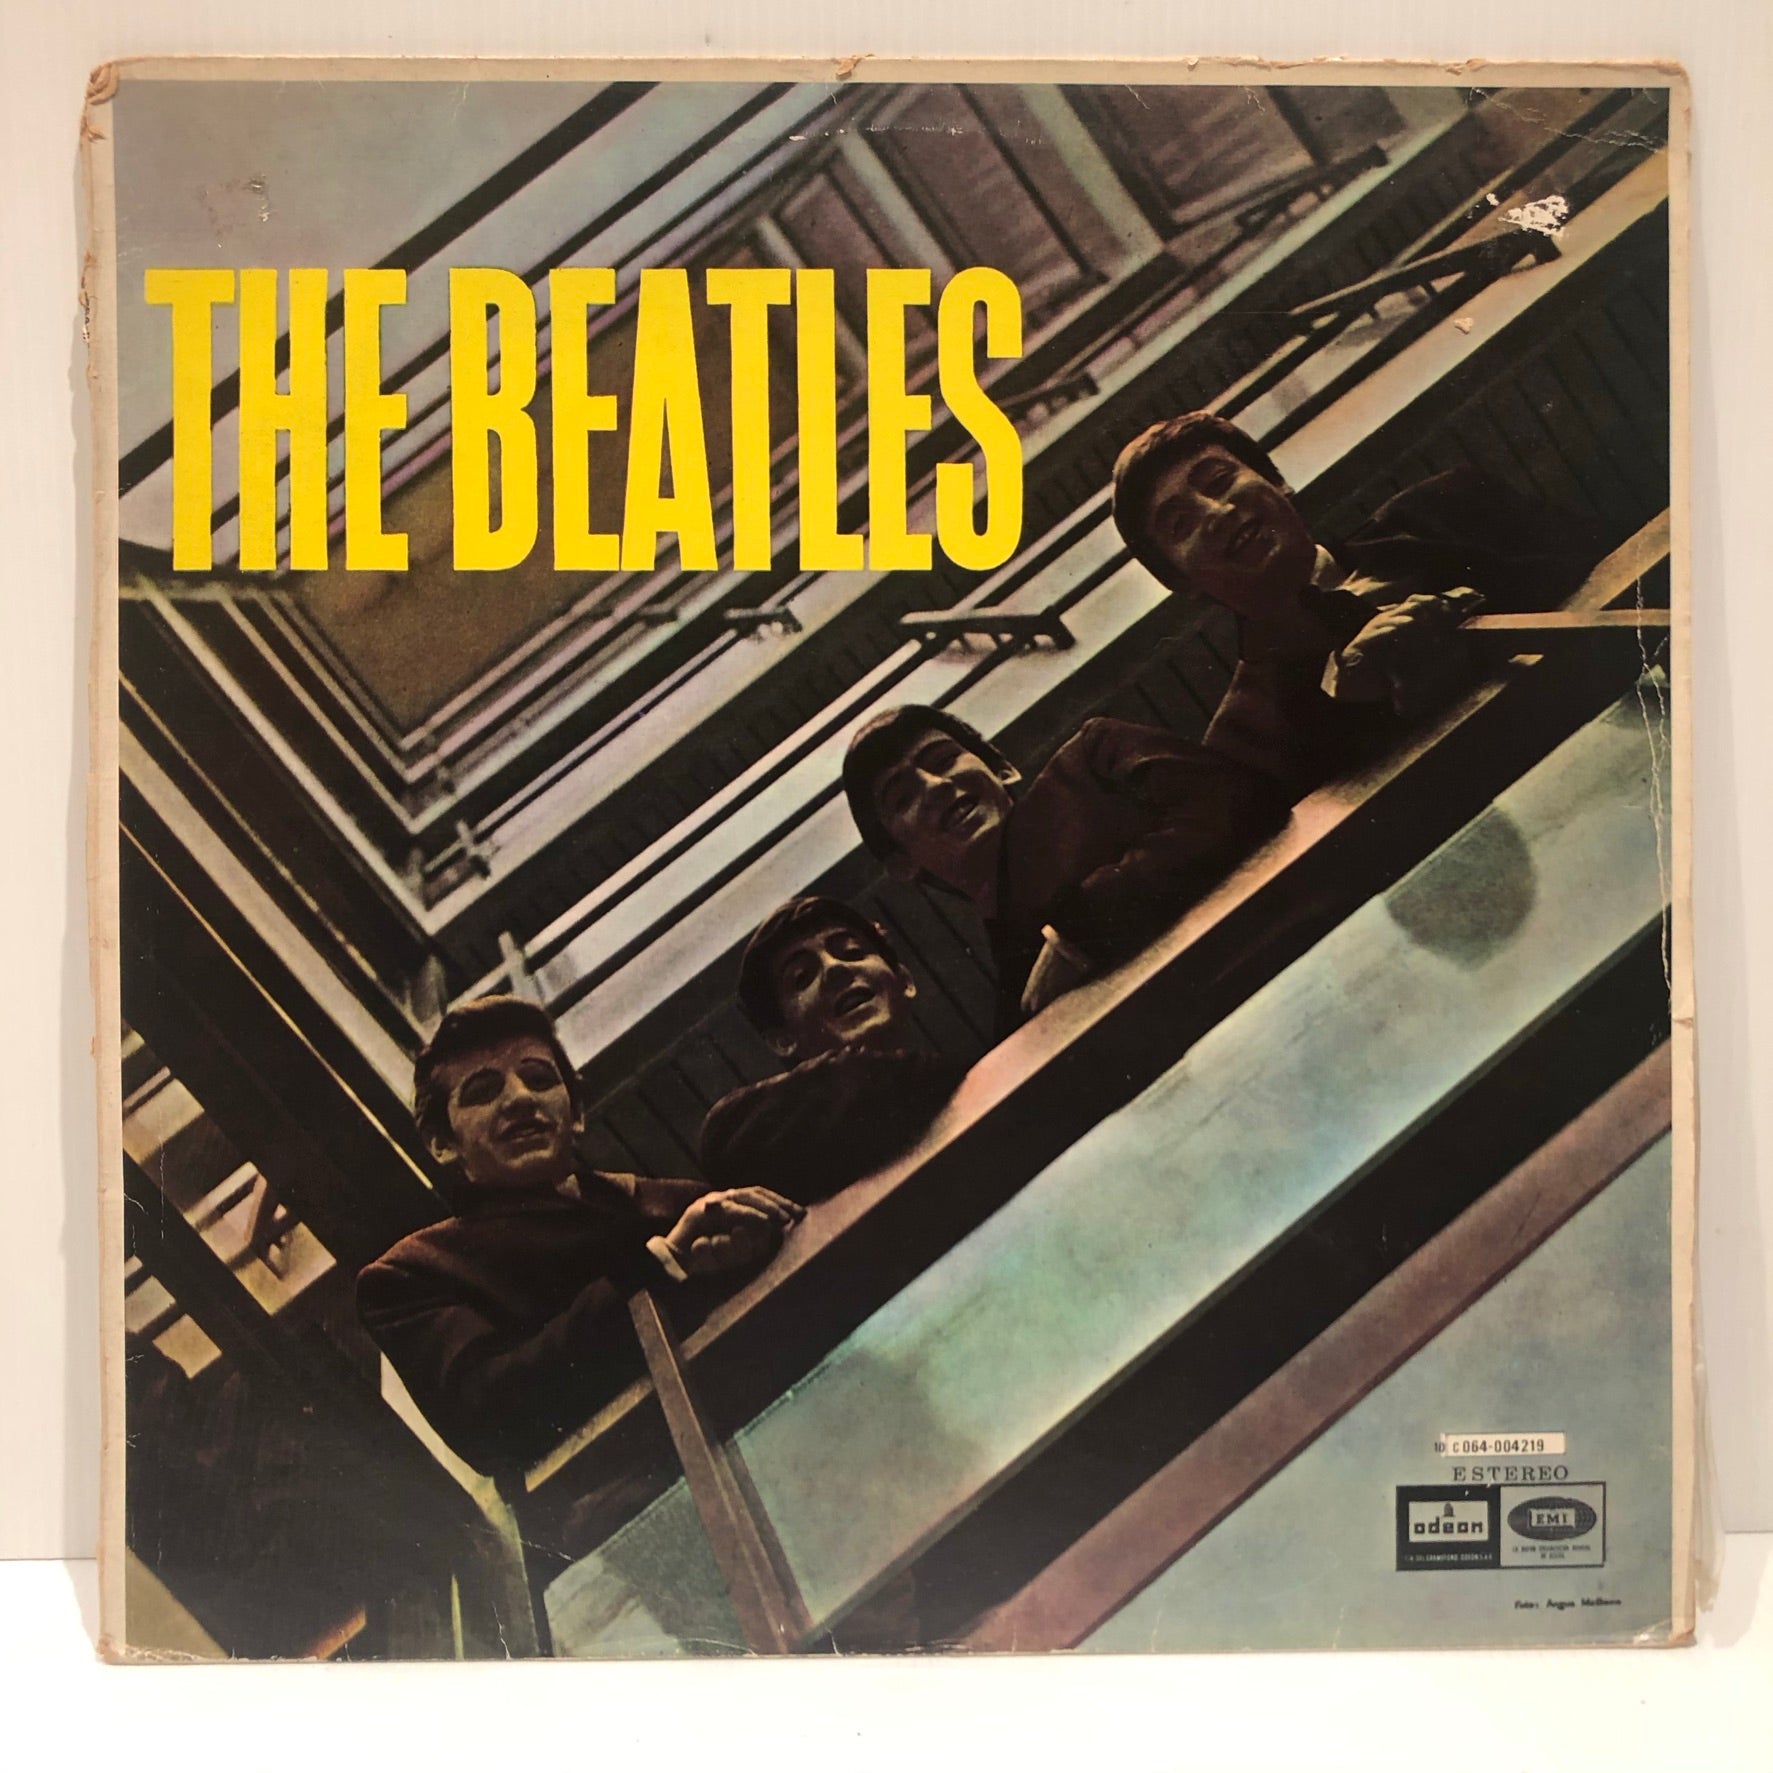 The Beatles - Please Please Me - Spain LP 1978 10 C 064-004219 